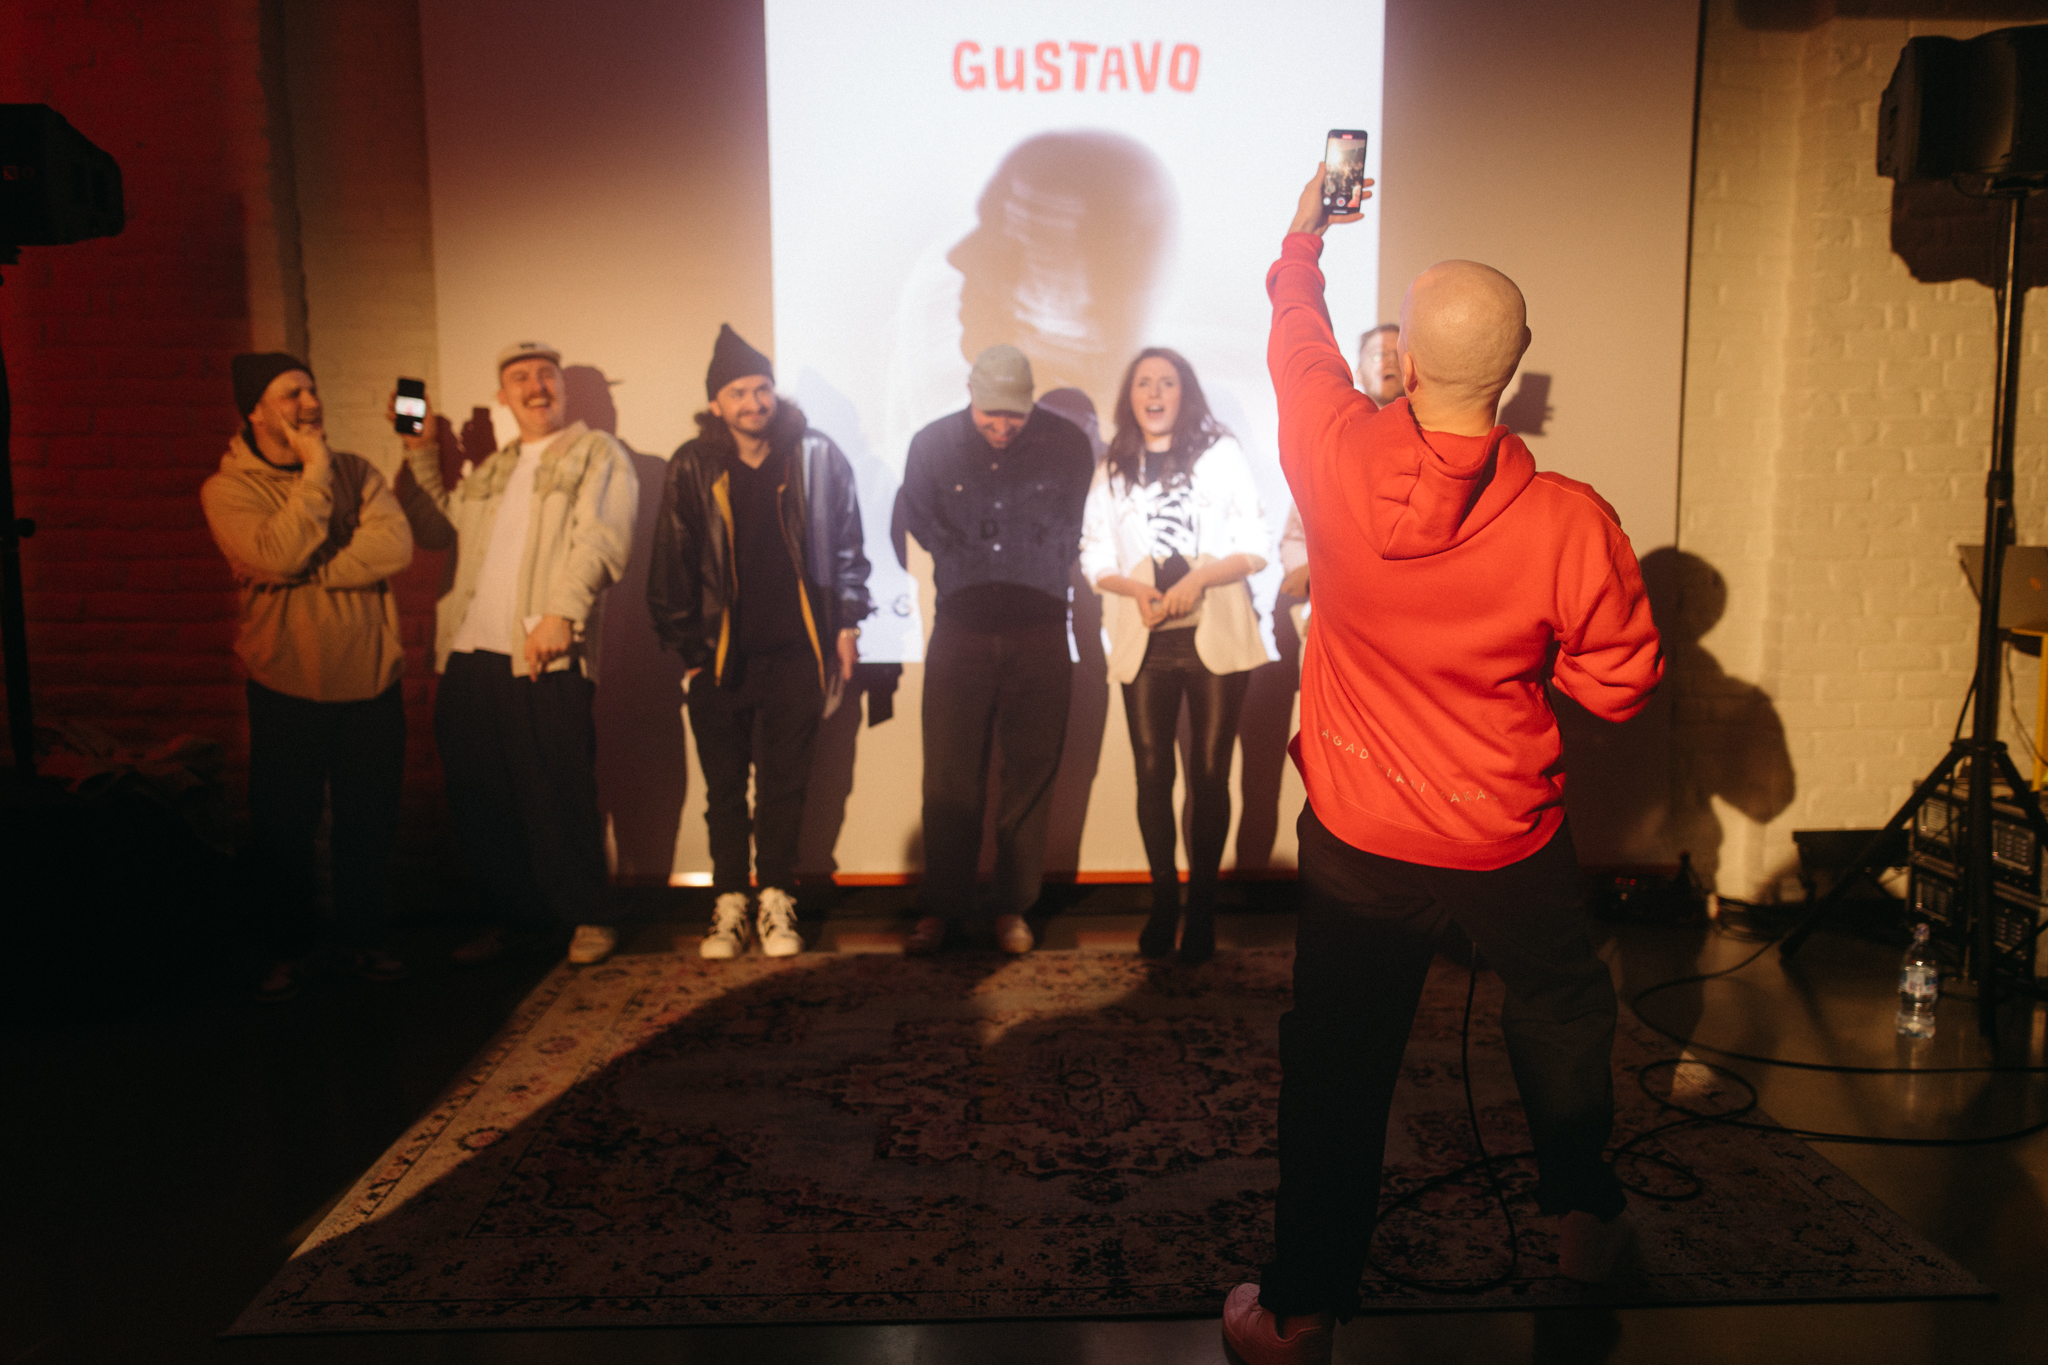 Gustavo jaunā albuma noklausīšanās pasākums.